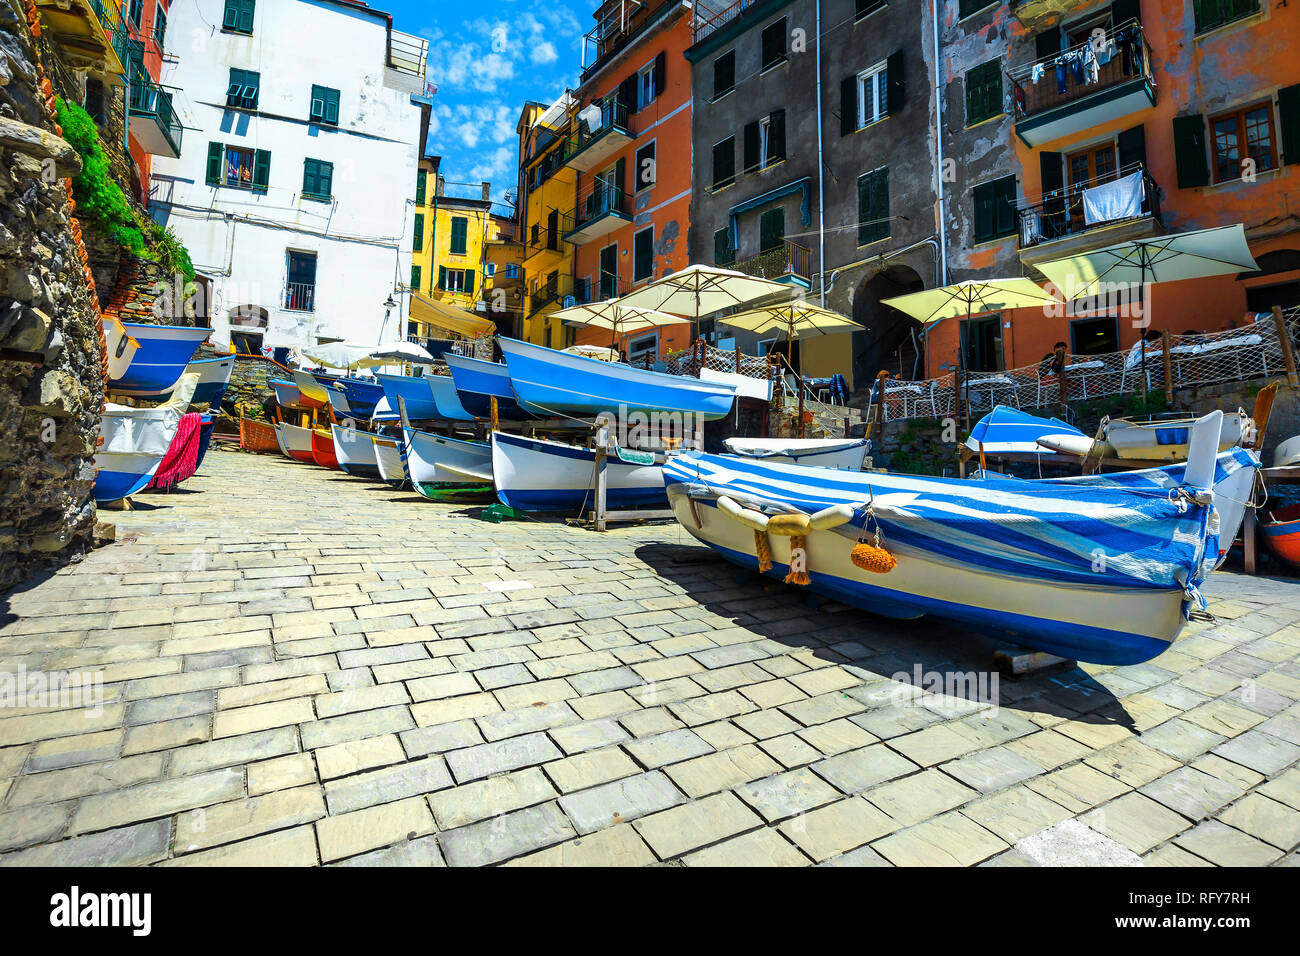 Riomaggiore impresionante villa turística y destinos de viaje. Admirable street view con botes de pesca de madera y coloridos edificios tradicionales Foto de stock